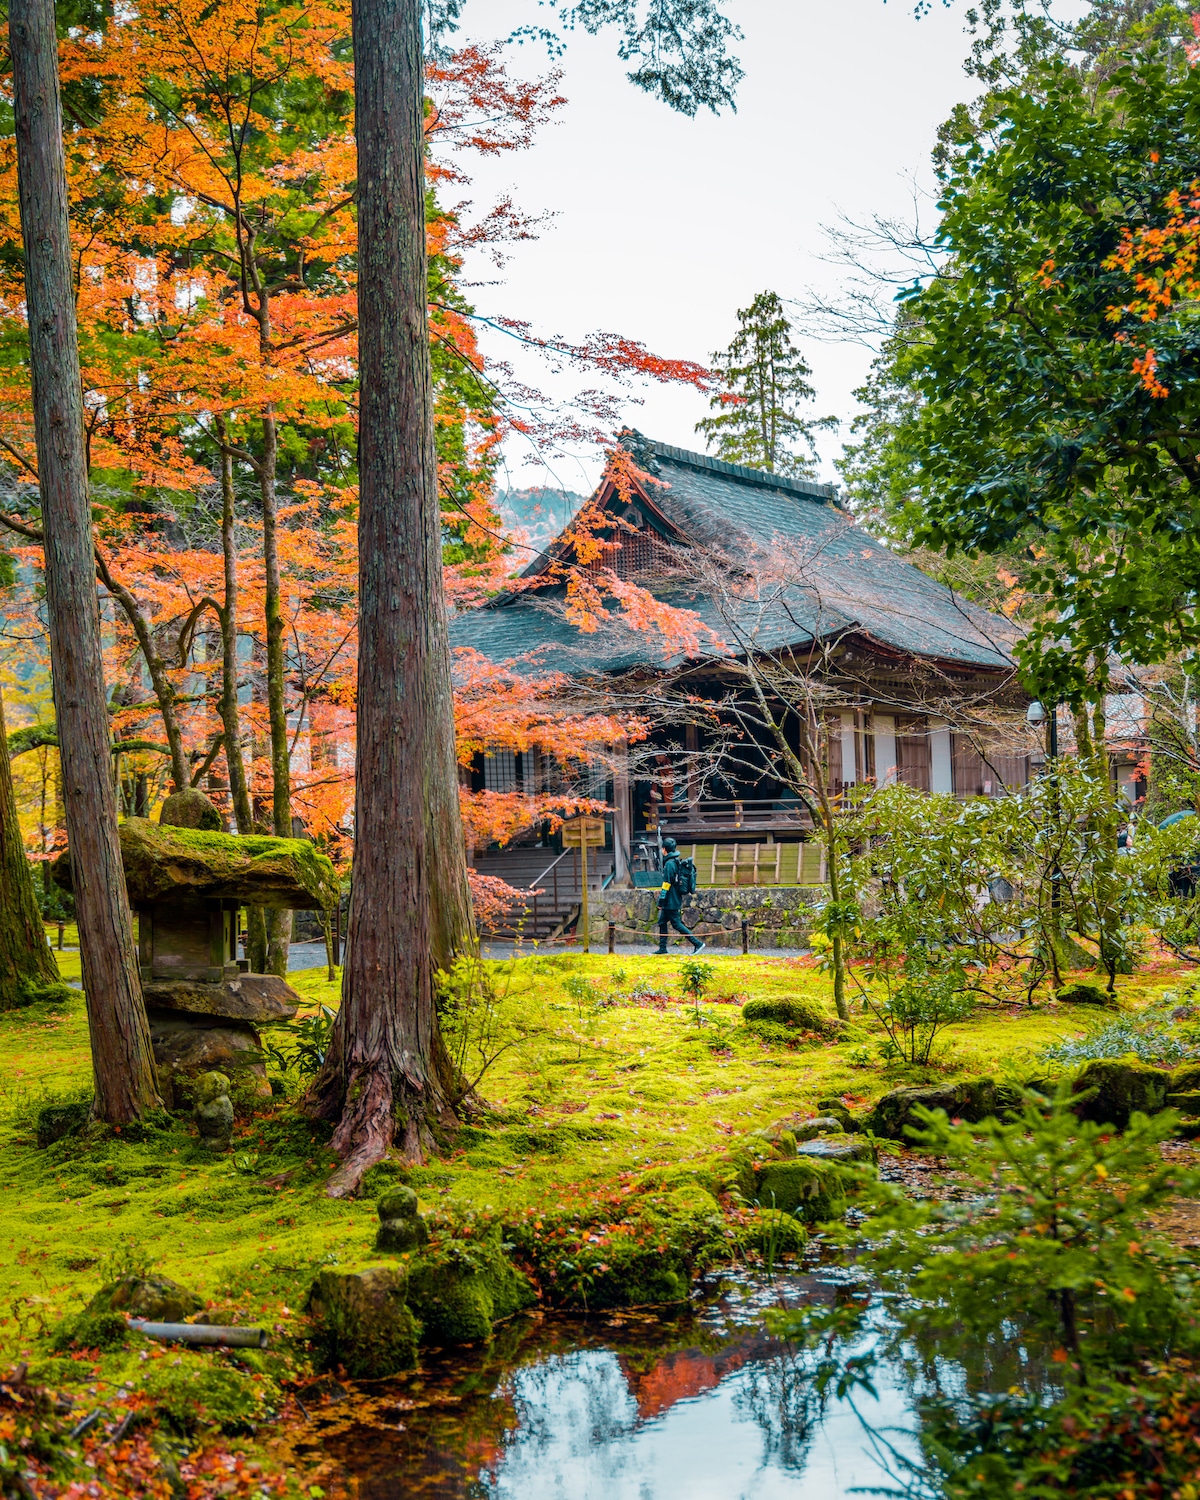 Sanzenin Temple in Japan